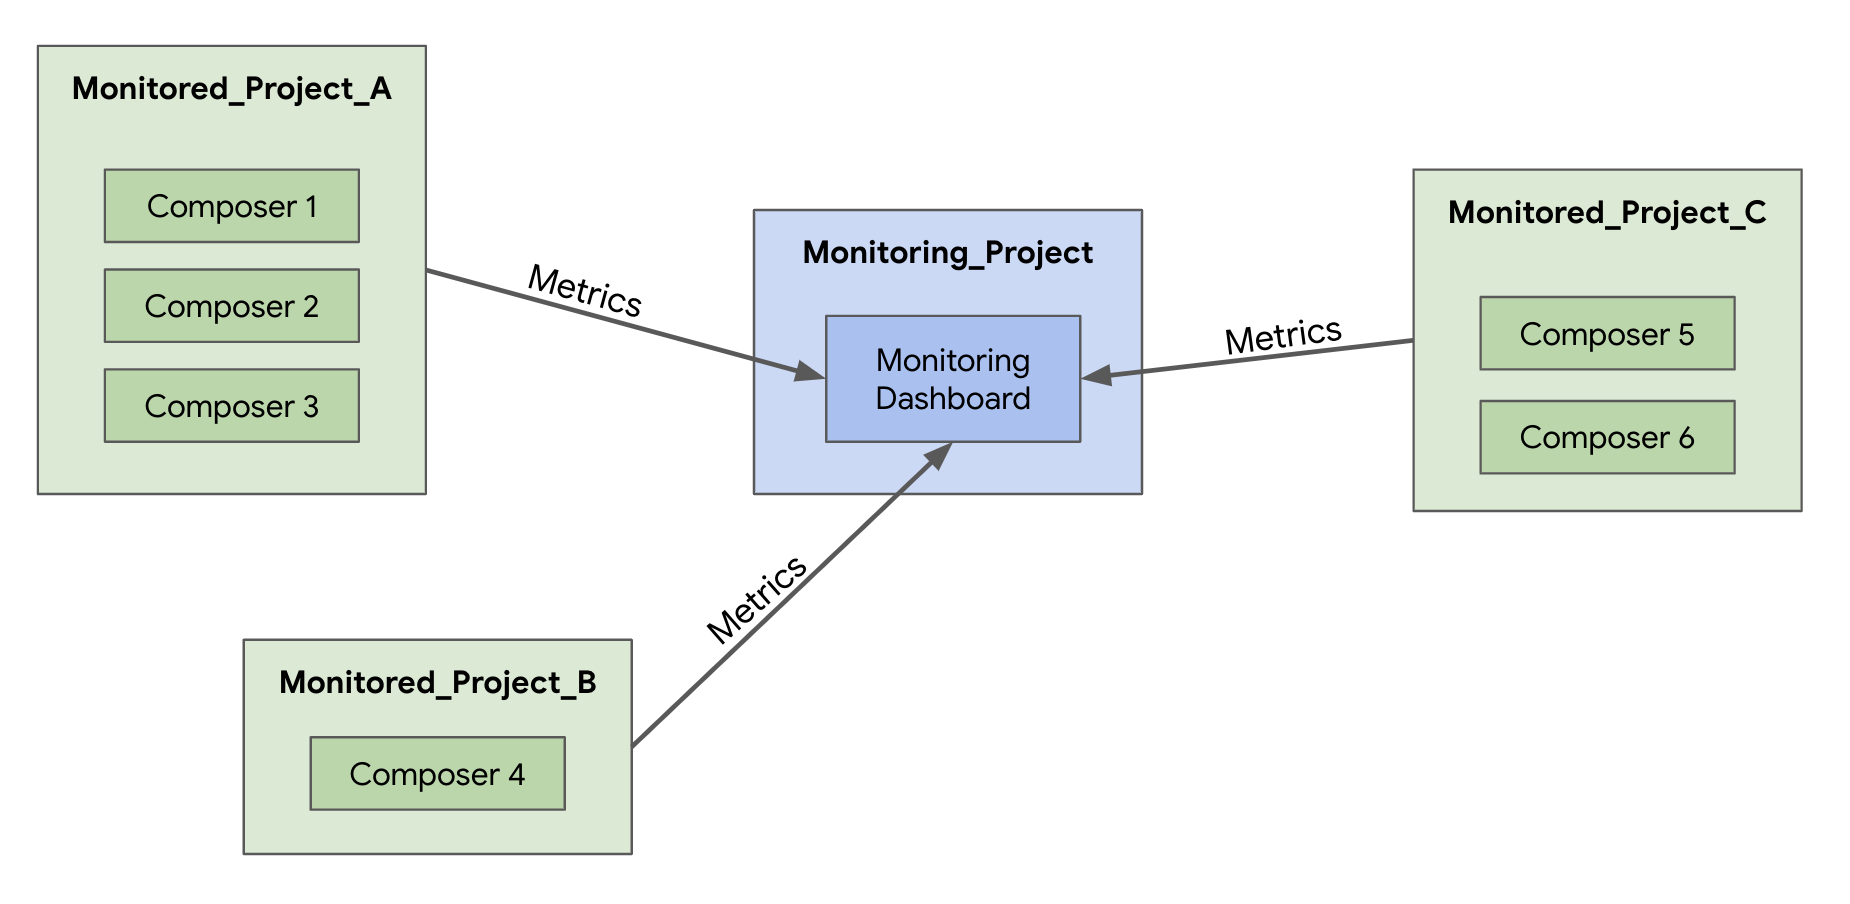 モニタリング ダッシュボードを含むモニタリング プロジェクトと、それぞれ Composer 環境を含む 3 つのモニタリング対象プロジェクトを示す図。各モニタリング対象プロジェクトには、「metrics」というラベルの付いたモニタリング対象プロジェクトを指す矢印があります